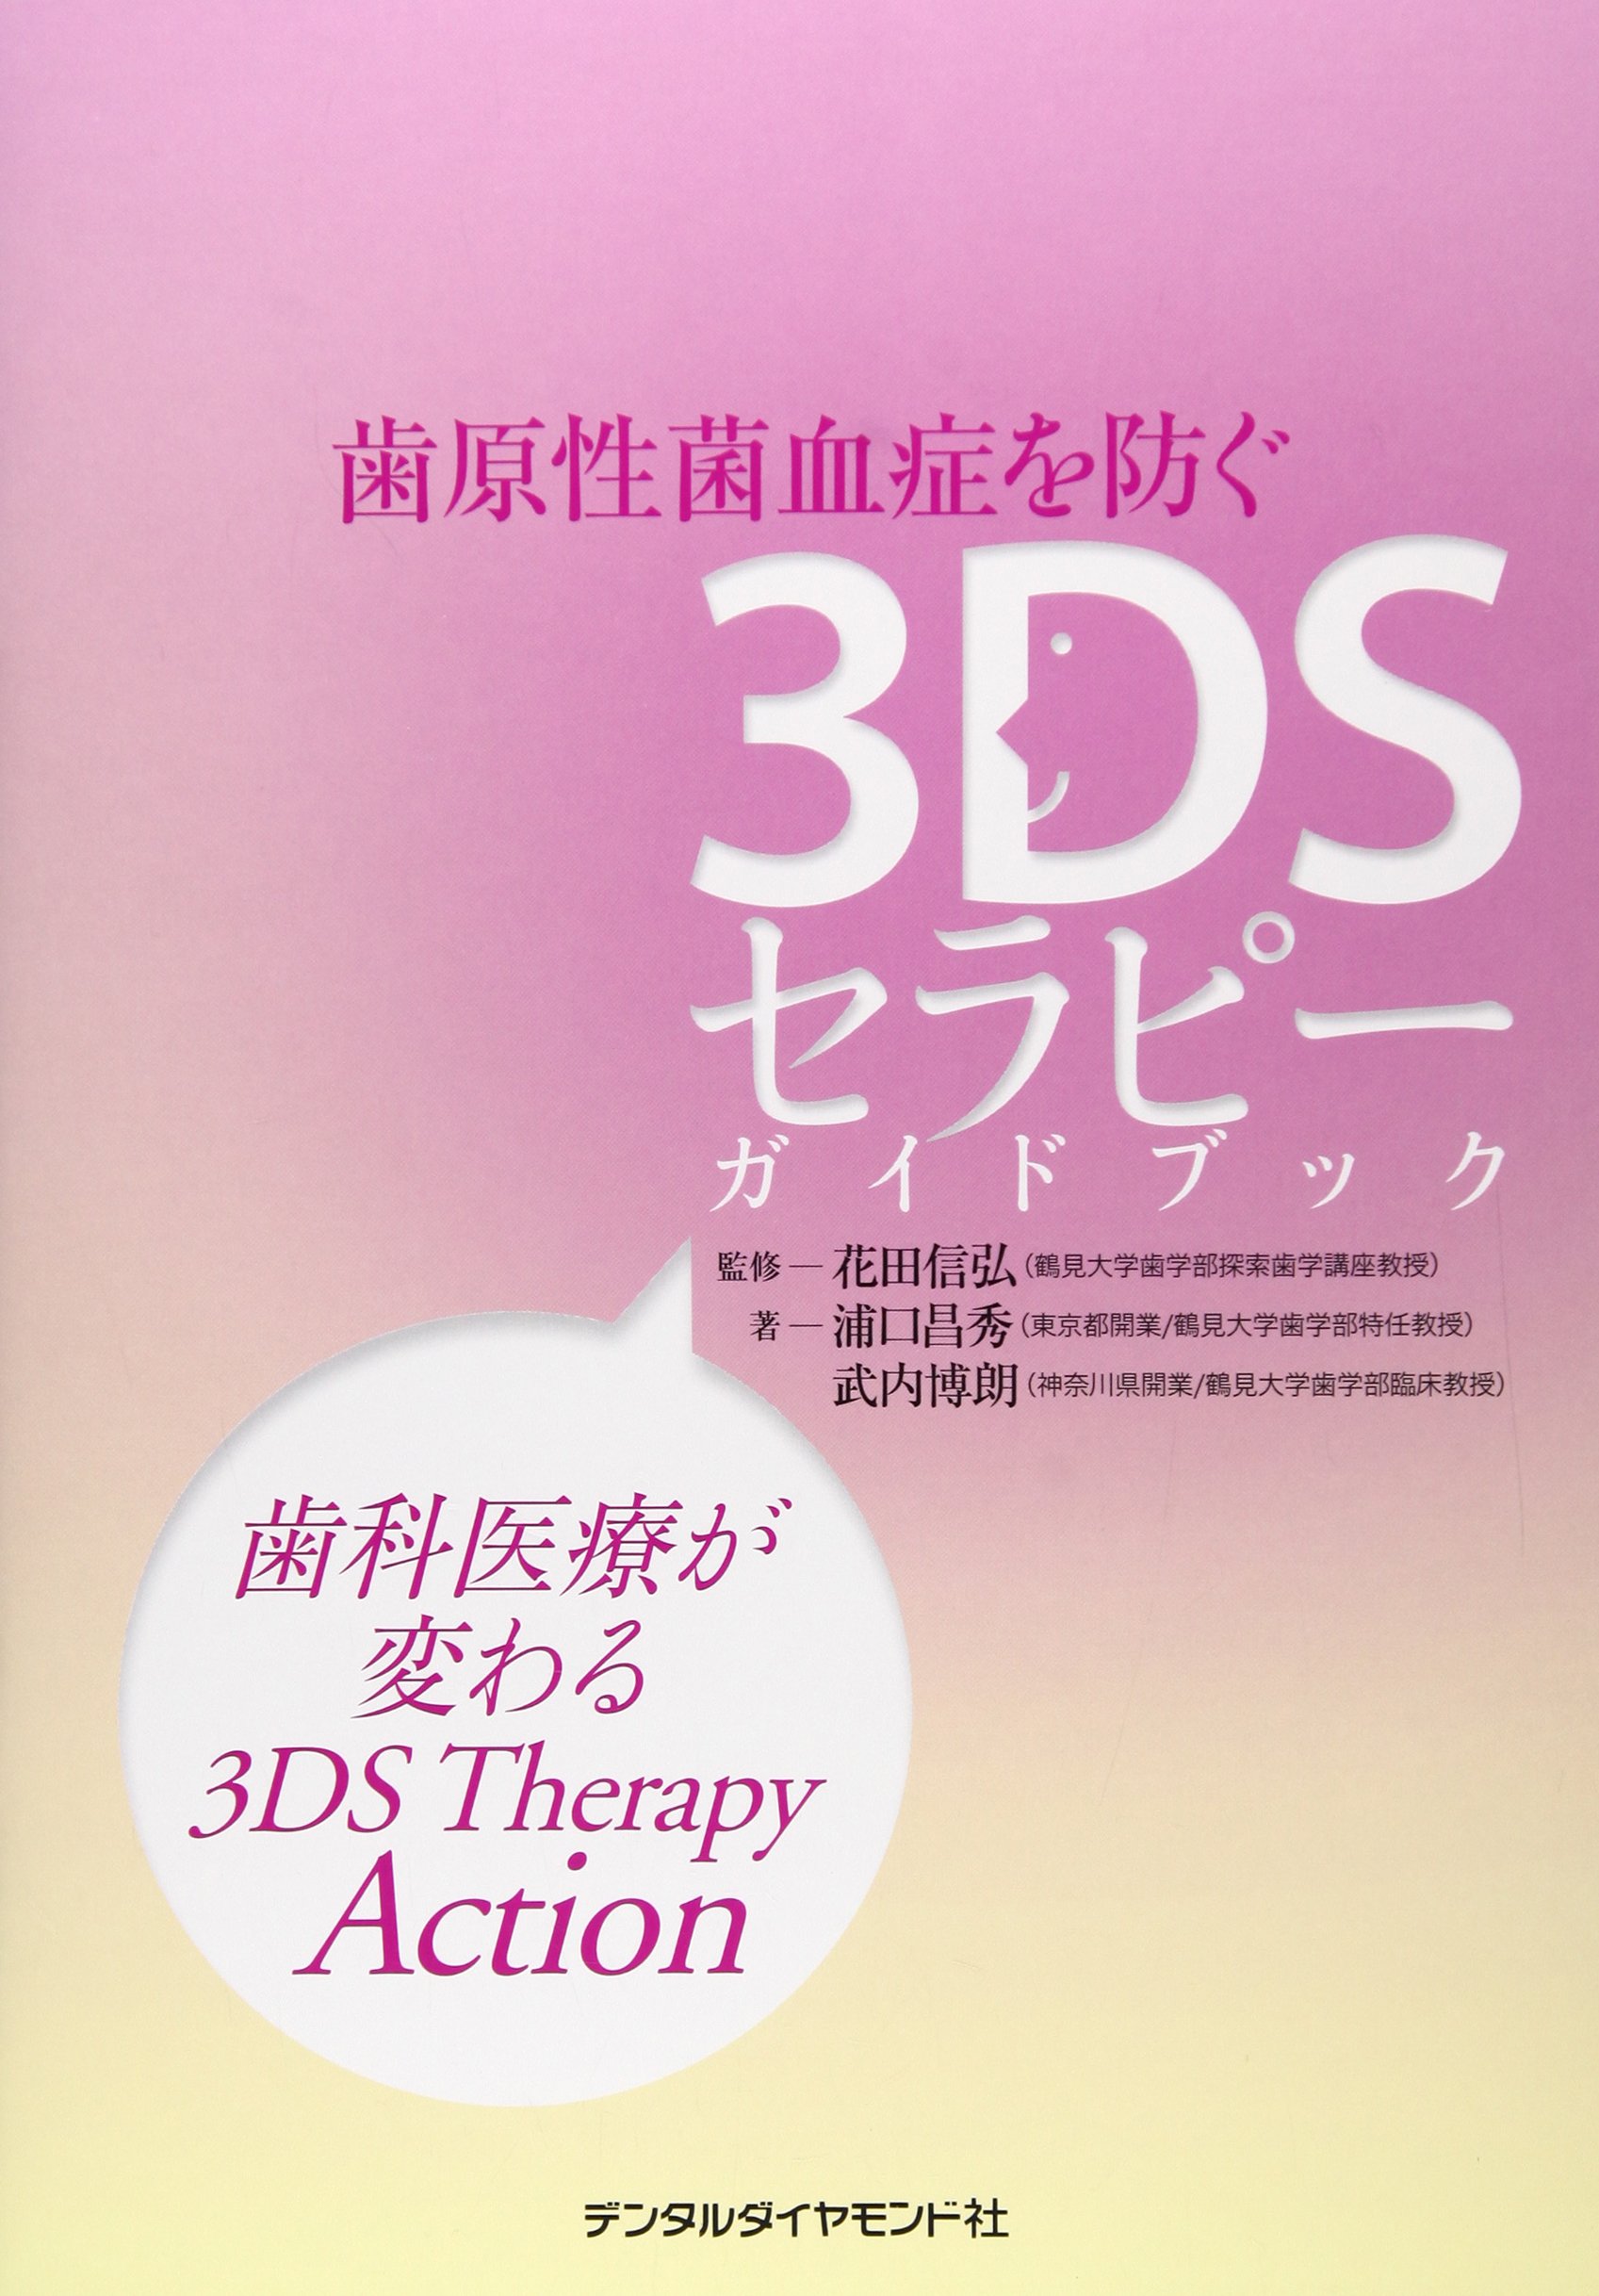 치원성균피증을 막는 3DS세라피(therapy) 가이드 북―치과의료가 변하는 3DS Therapy Action